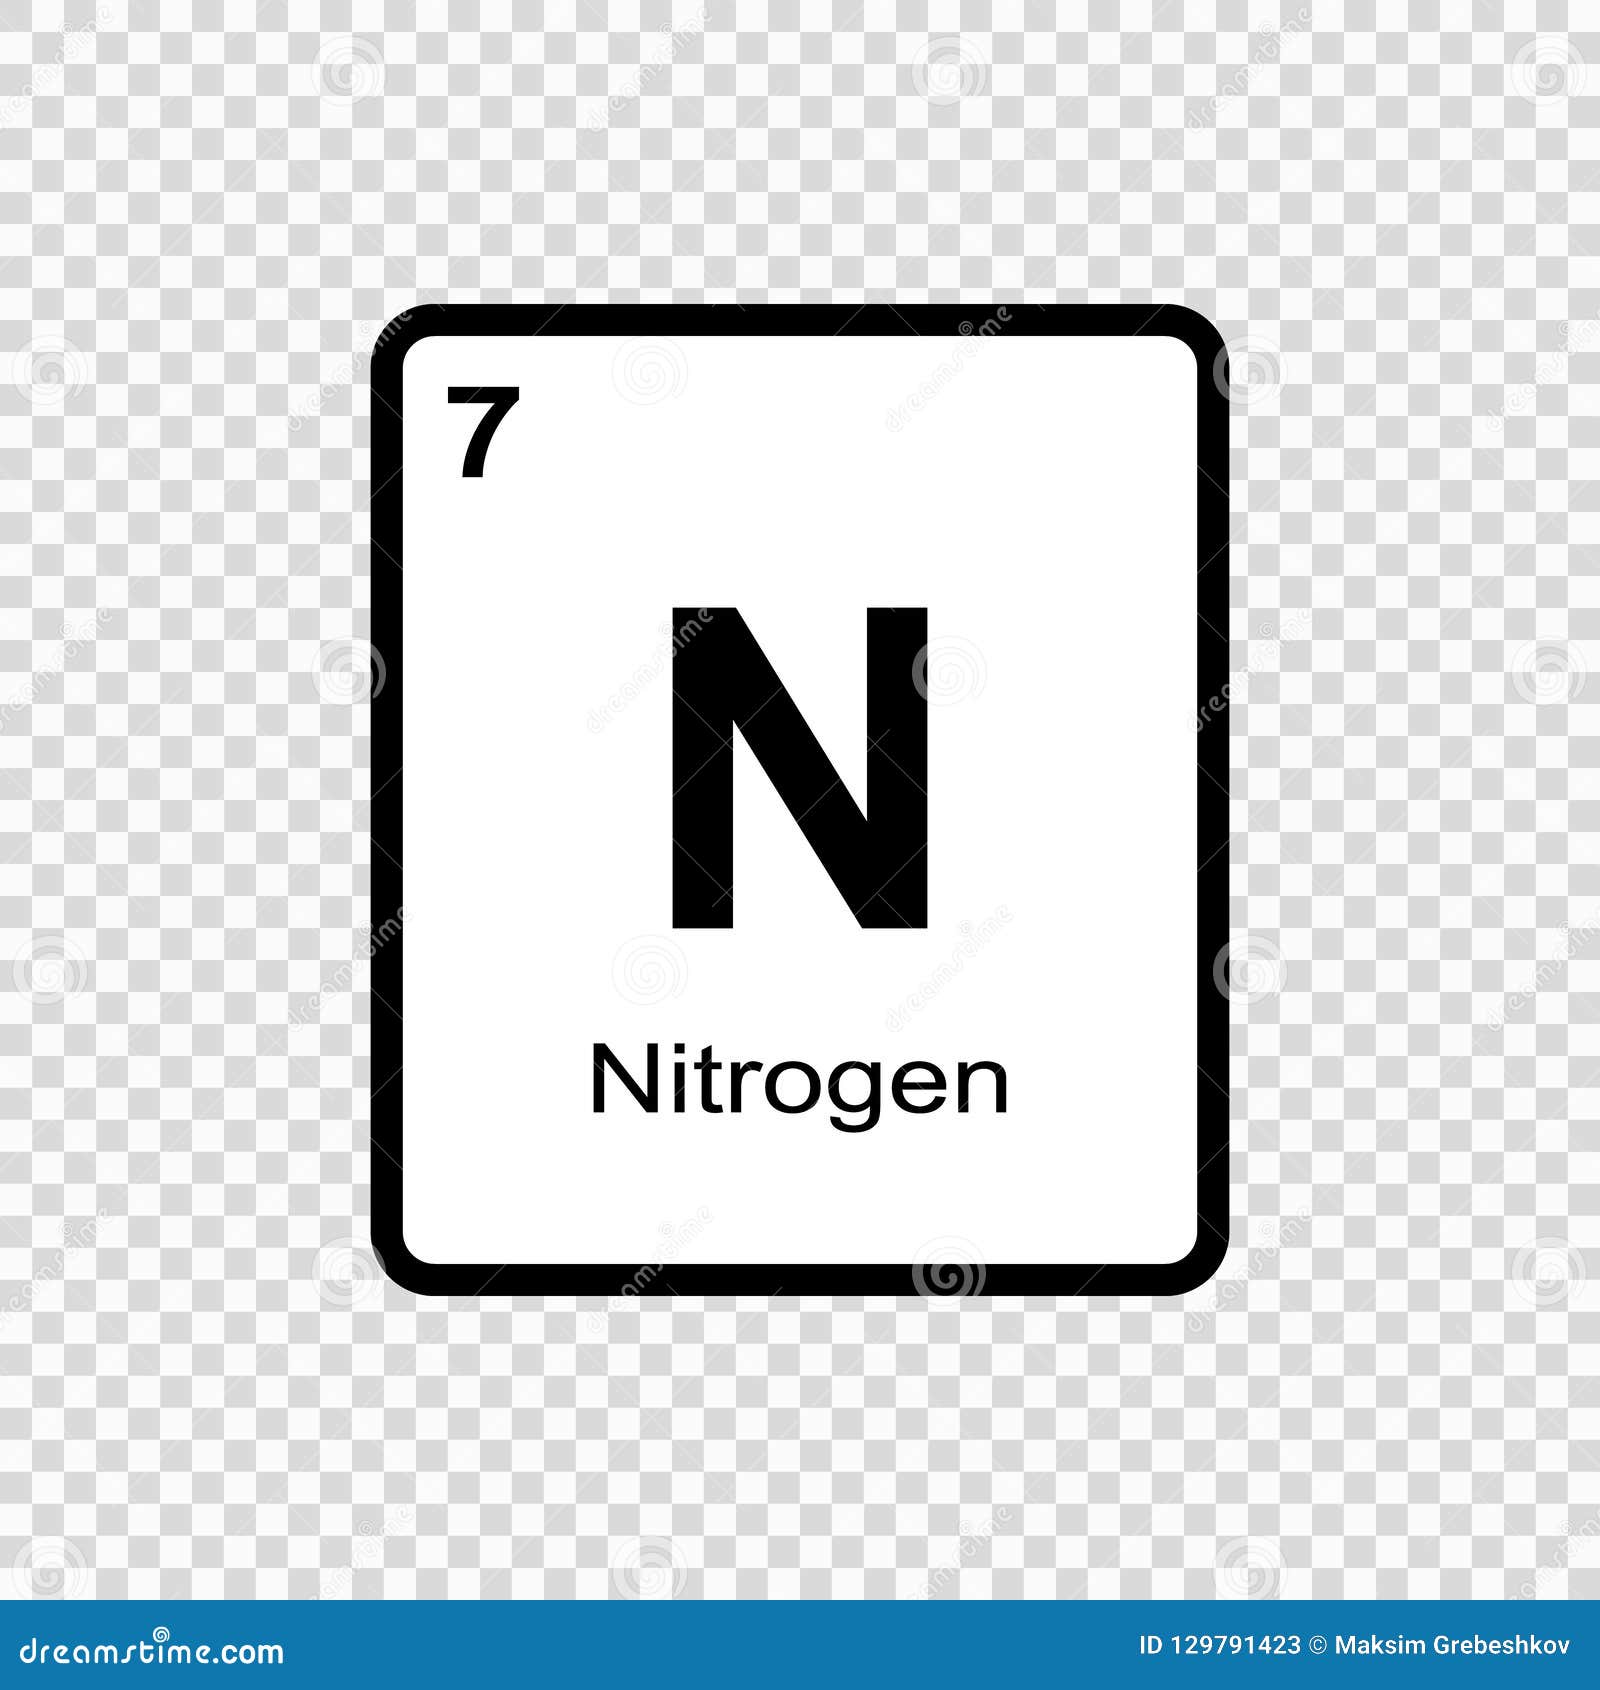 Азот символ элемента. Азот химический элемент. Химический символ азота. Значки хим элементов азот.